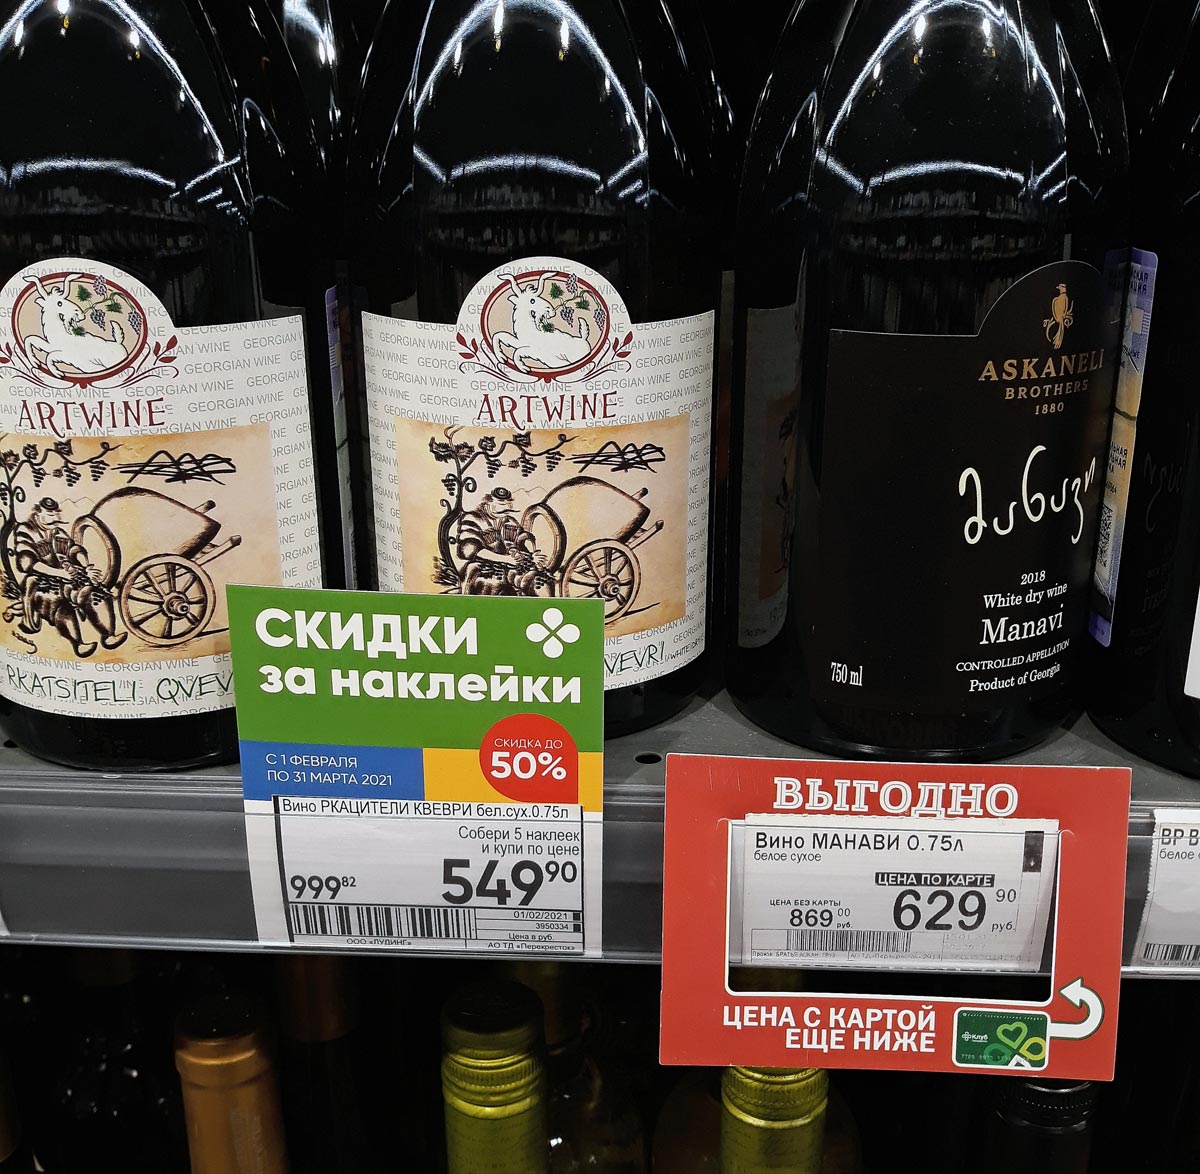 Купить вино в перекрестке. Грузинское вино в перекрестке. Грузинские вина в перекрестке. Вино перекресток. Молдавское вино в перекрестке.